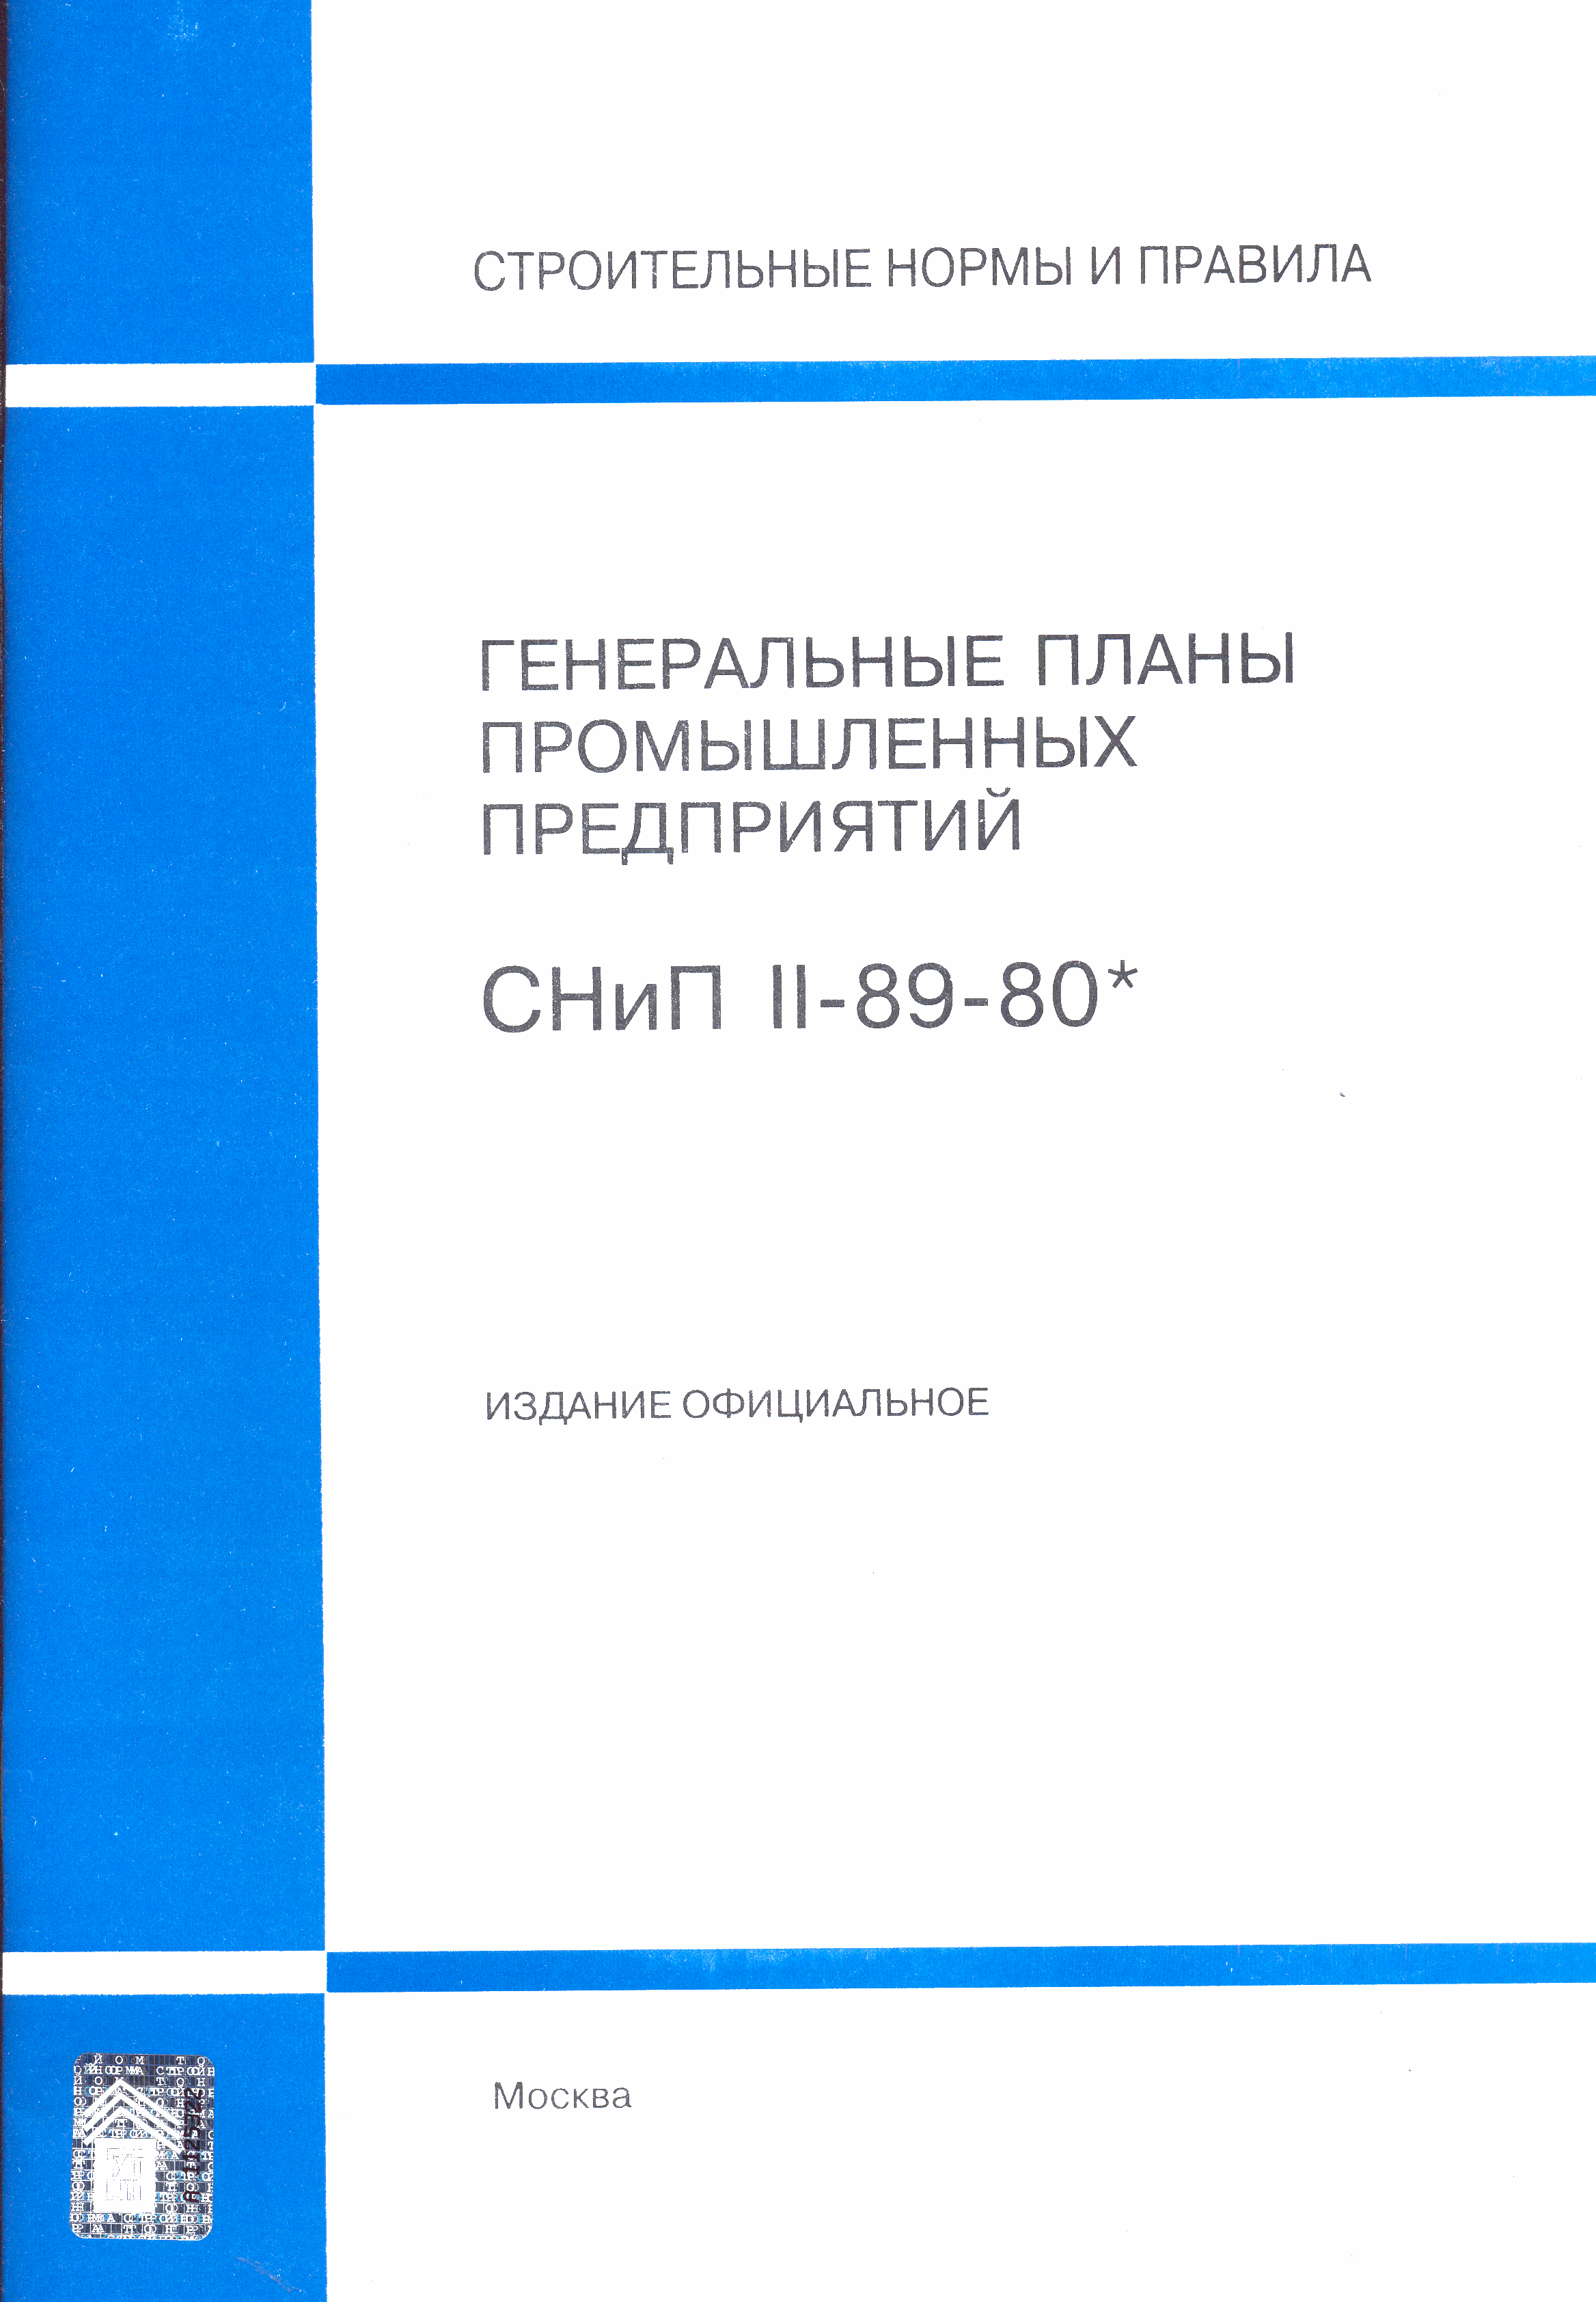 СНиП II-89-80*